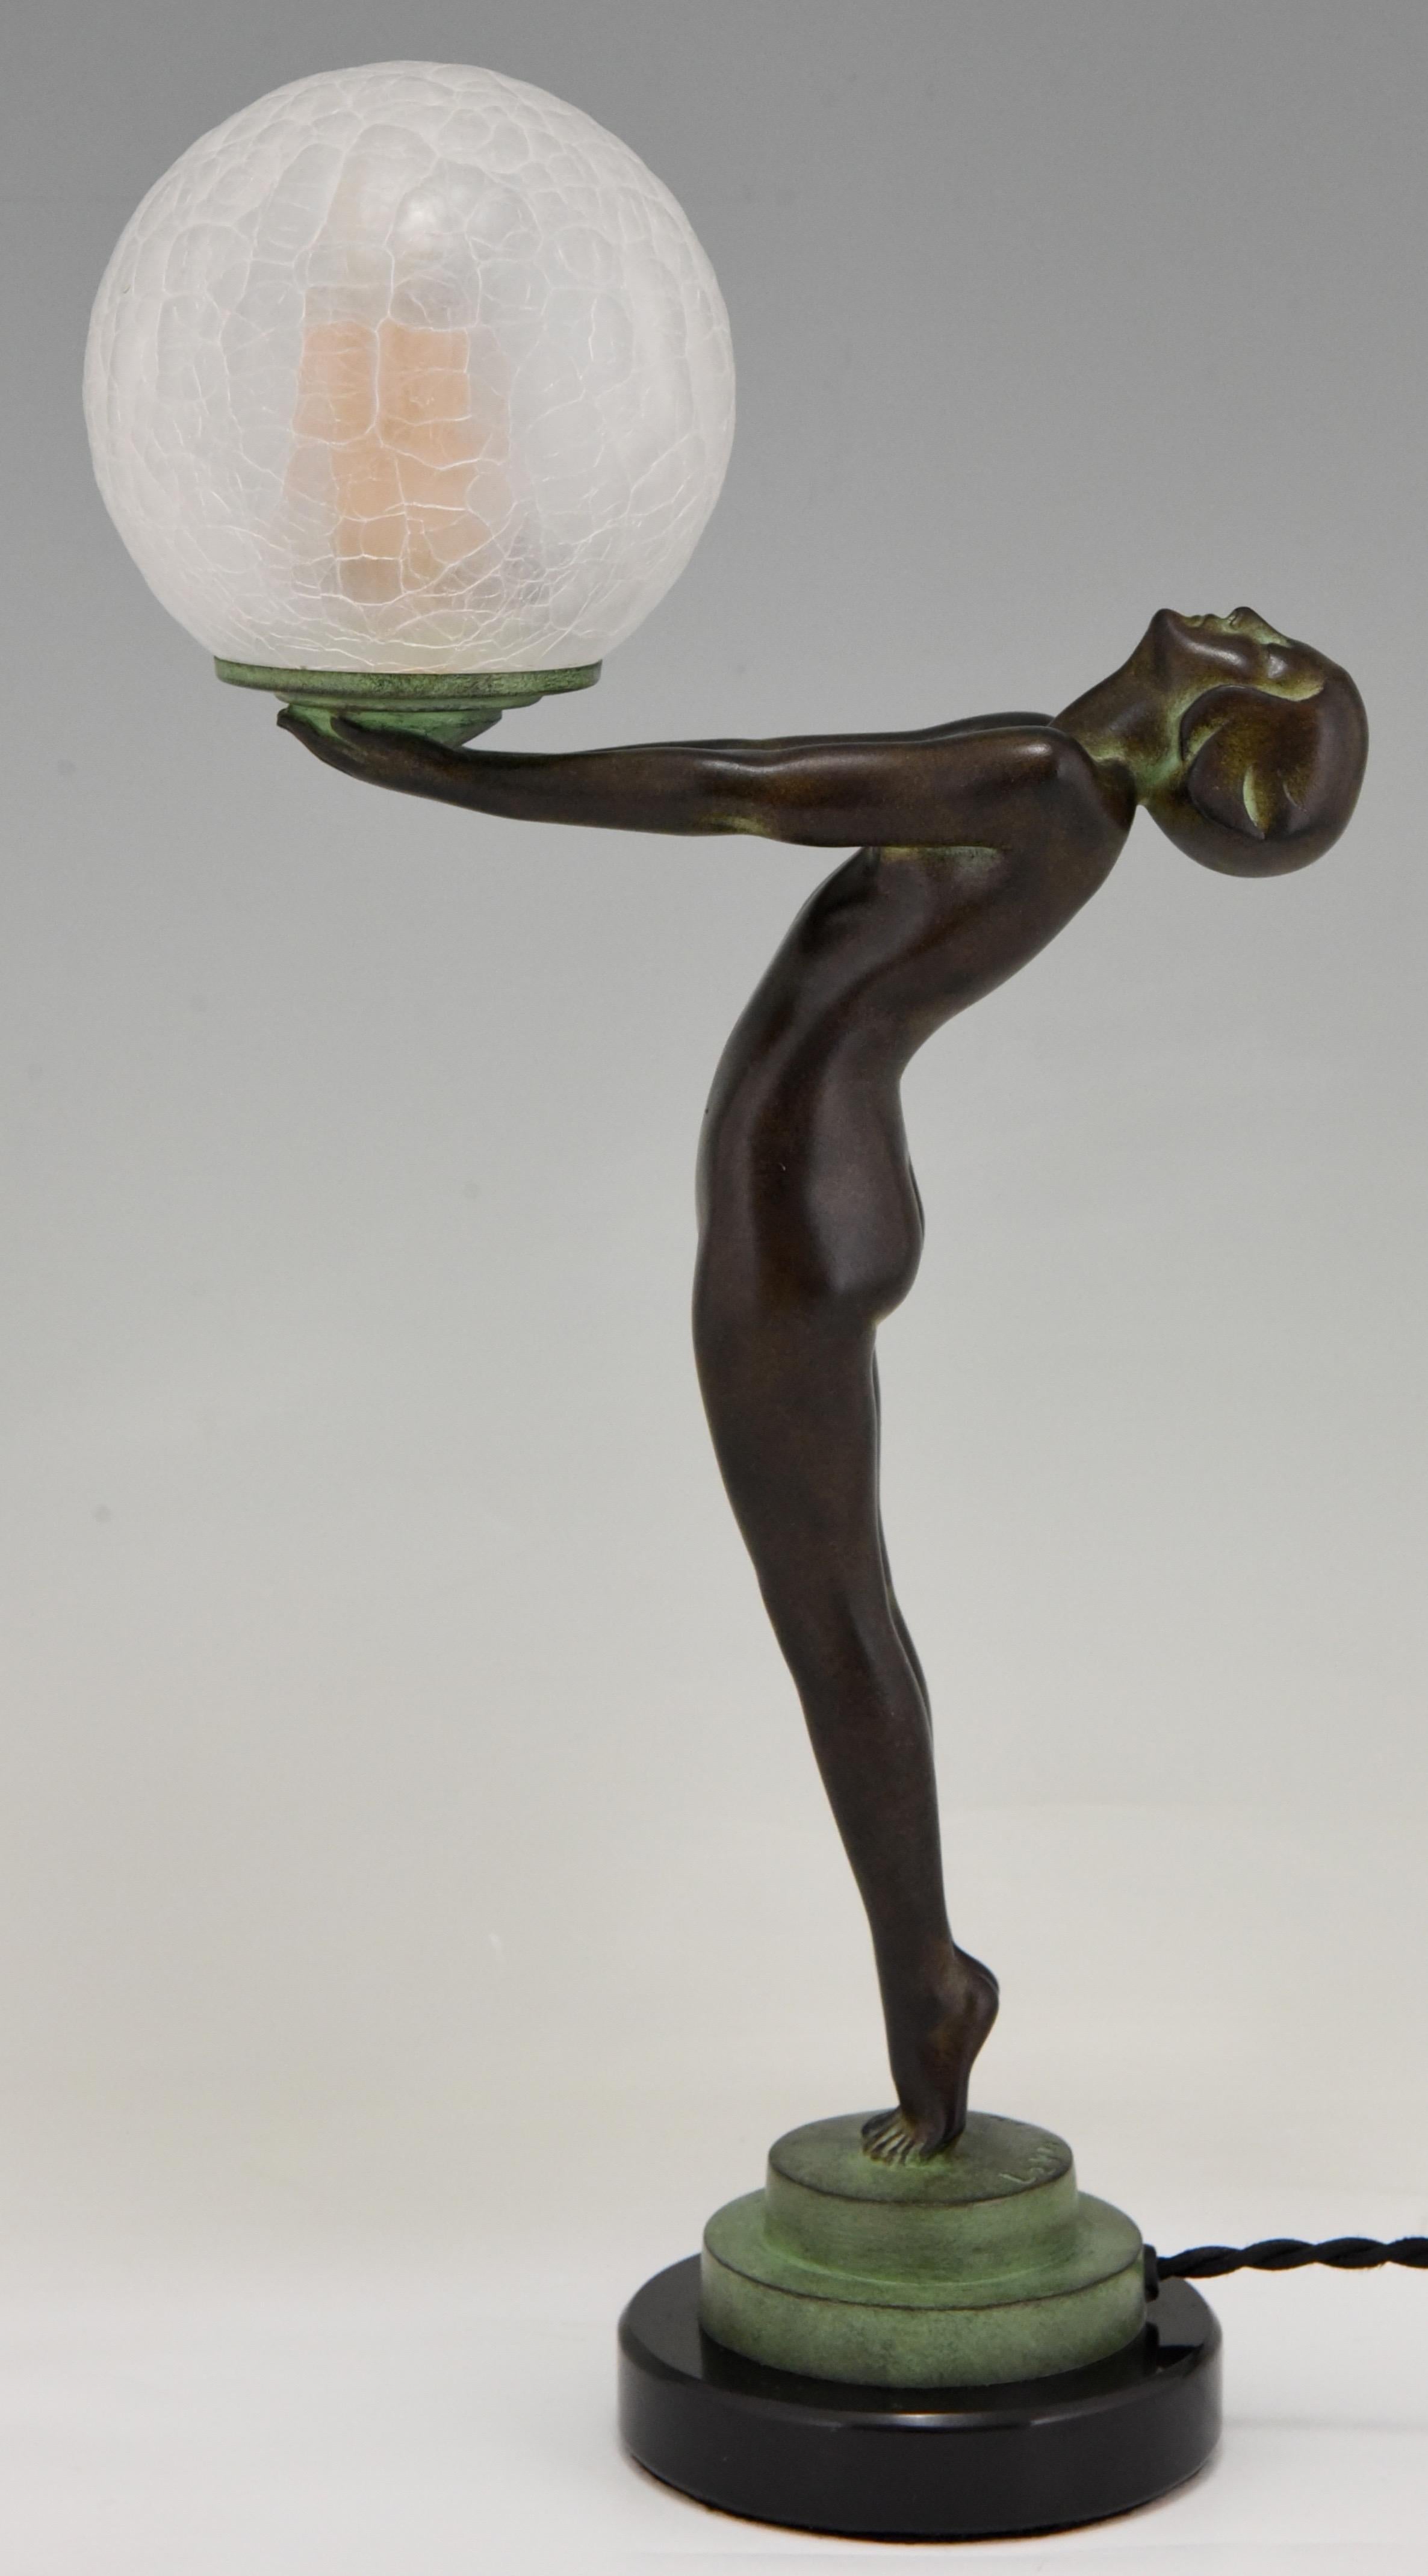 Lampe de table figurative de style Art Déco représentant une femme nue debout tenant un globe en verre.
Ce modèle, appelé Lueur lumineuse, est la version réduite de l'emblématique lampe Calle de Max Le Verrier.
La lampe est signée et porte la marque